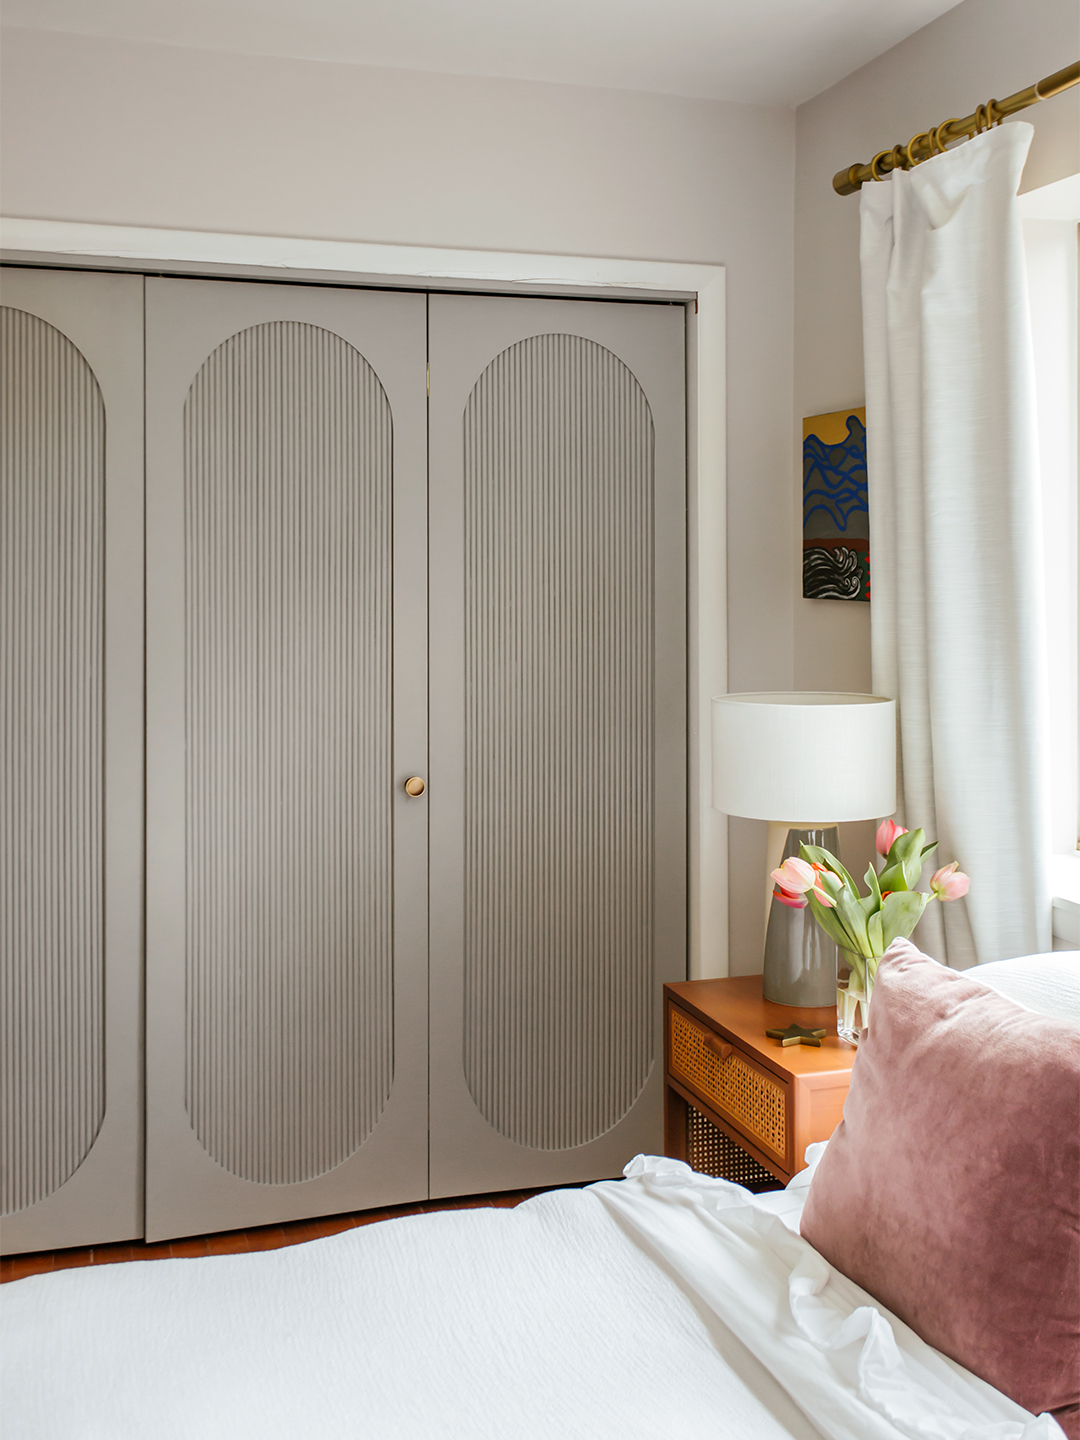 3 Ways to Reimagine Your Home's Bifold Closet Doors